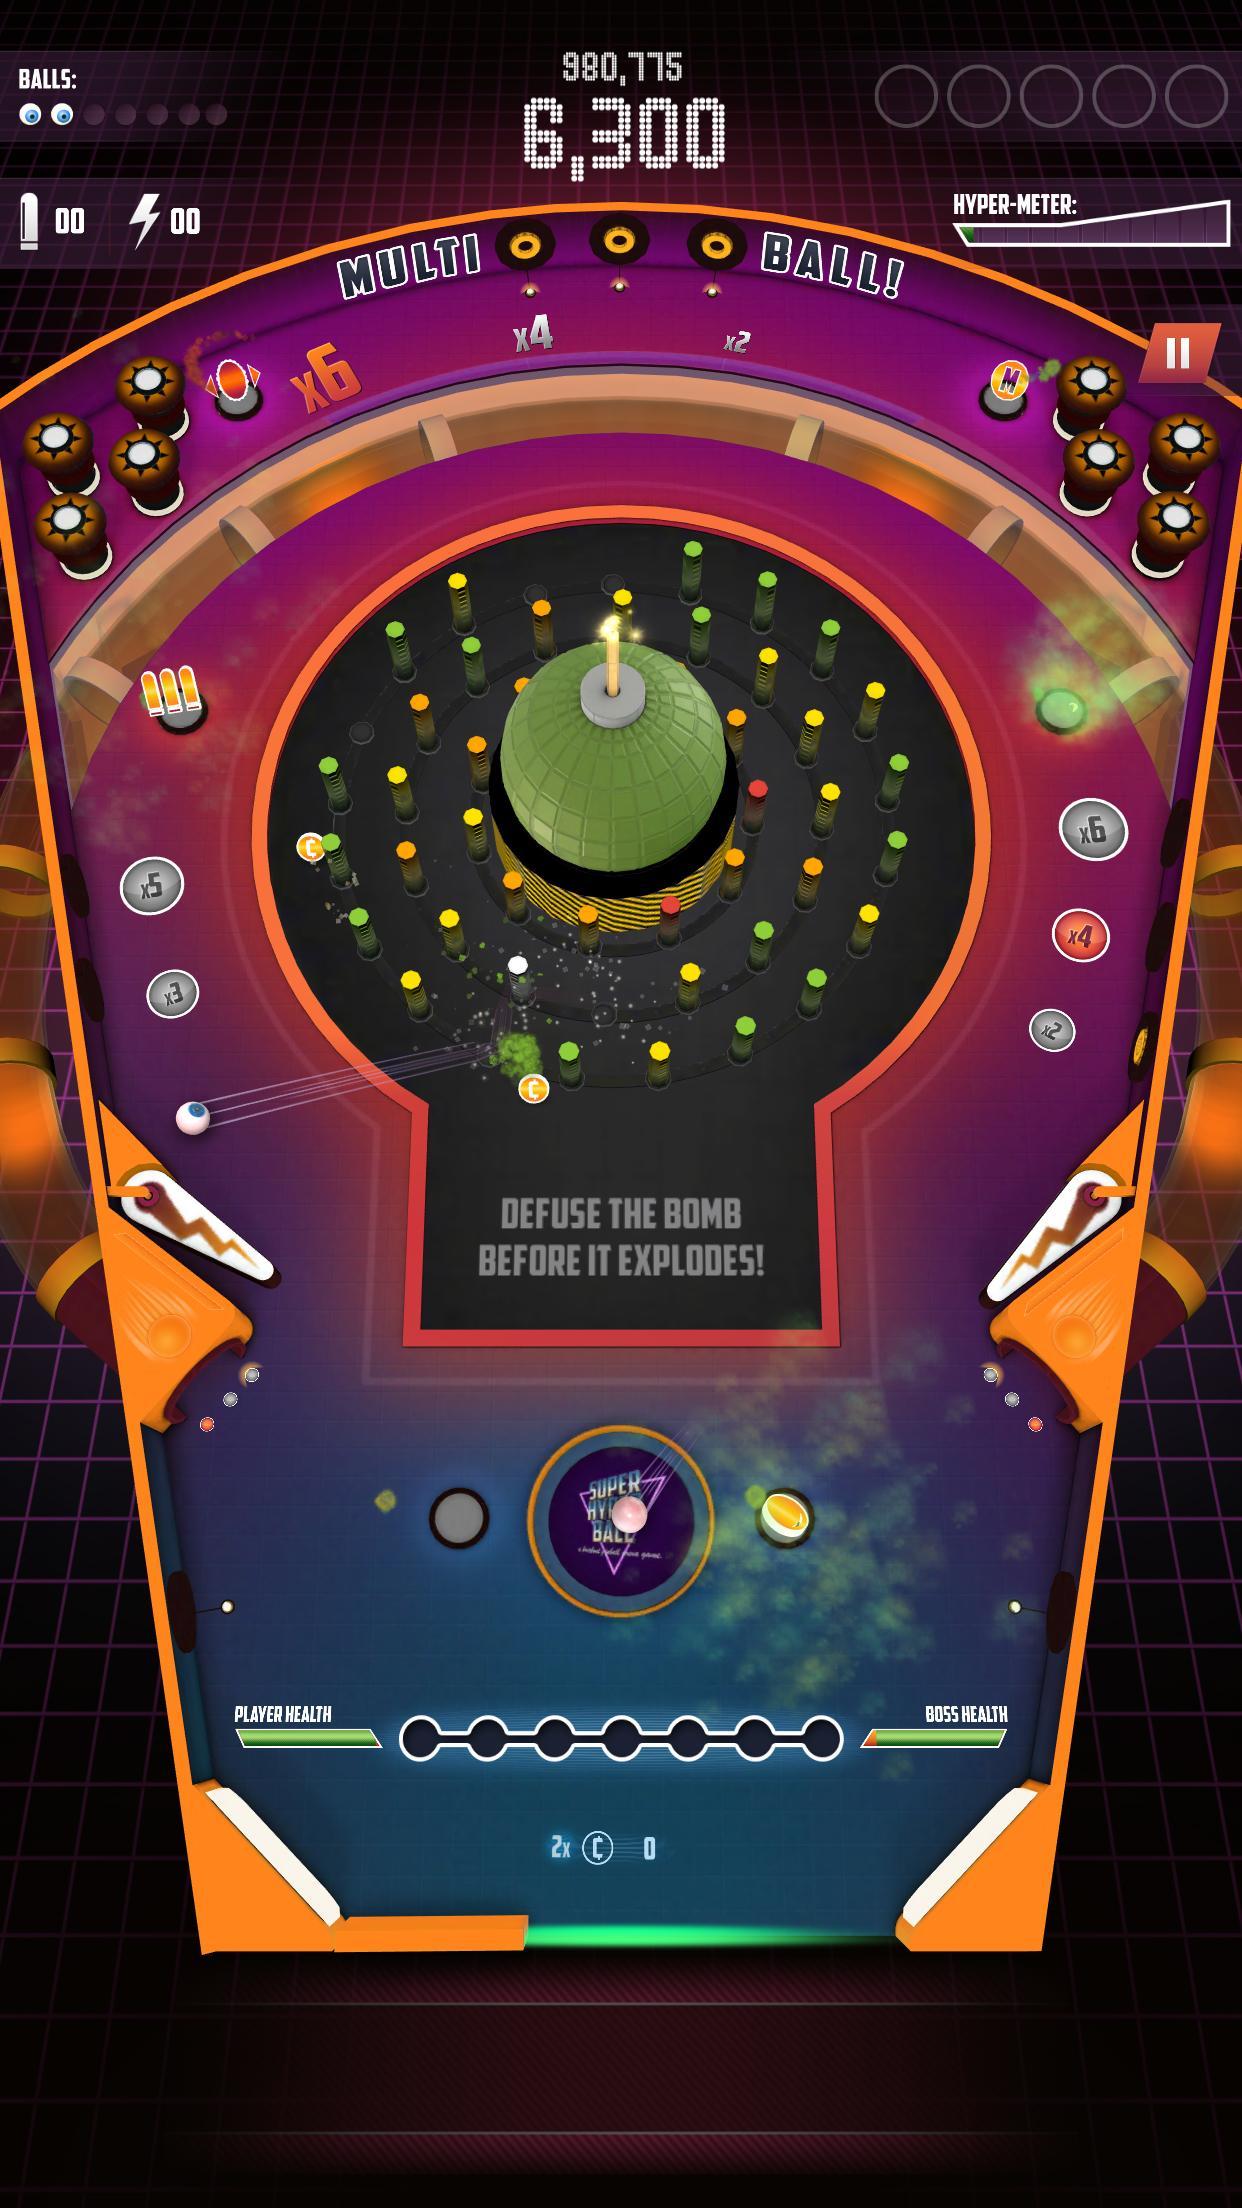 Super Hyper Ball 2 screenshot game